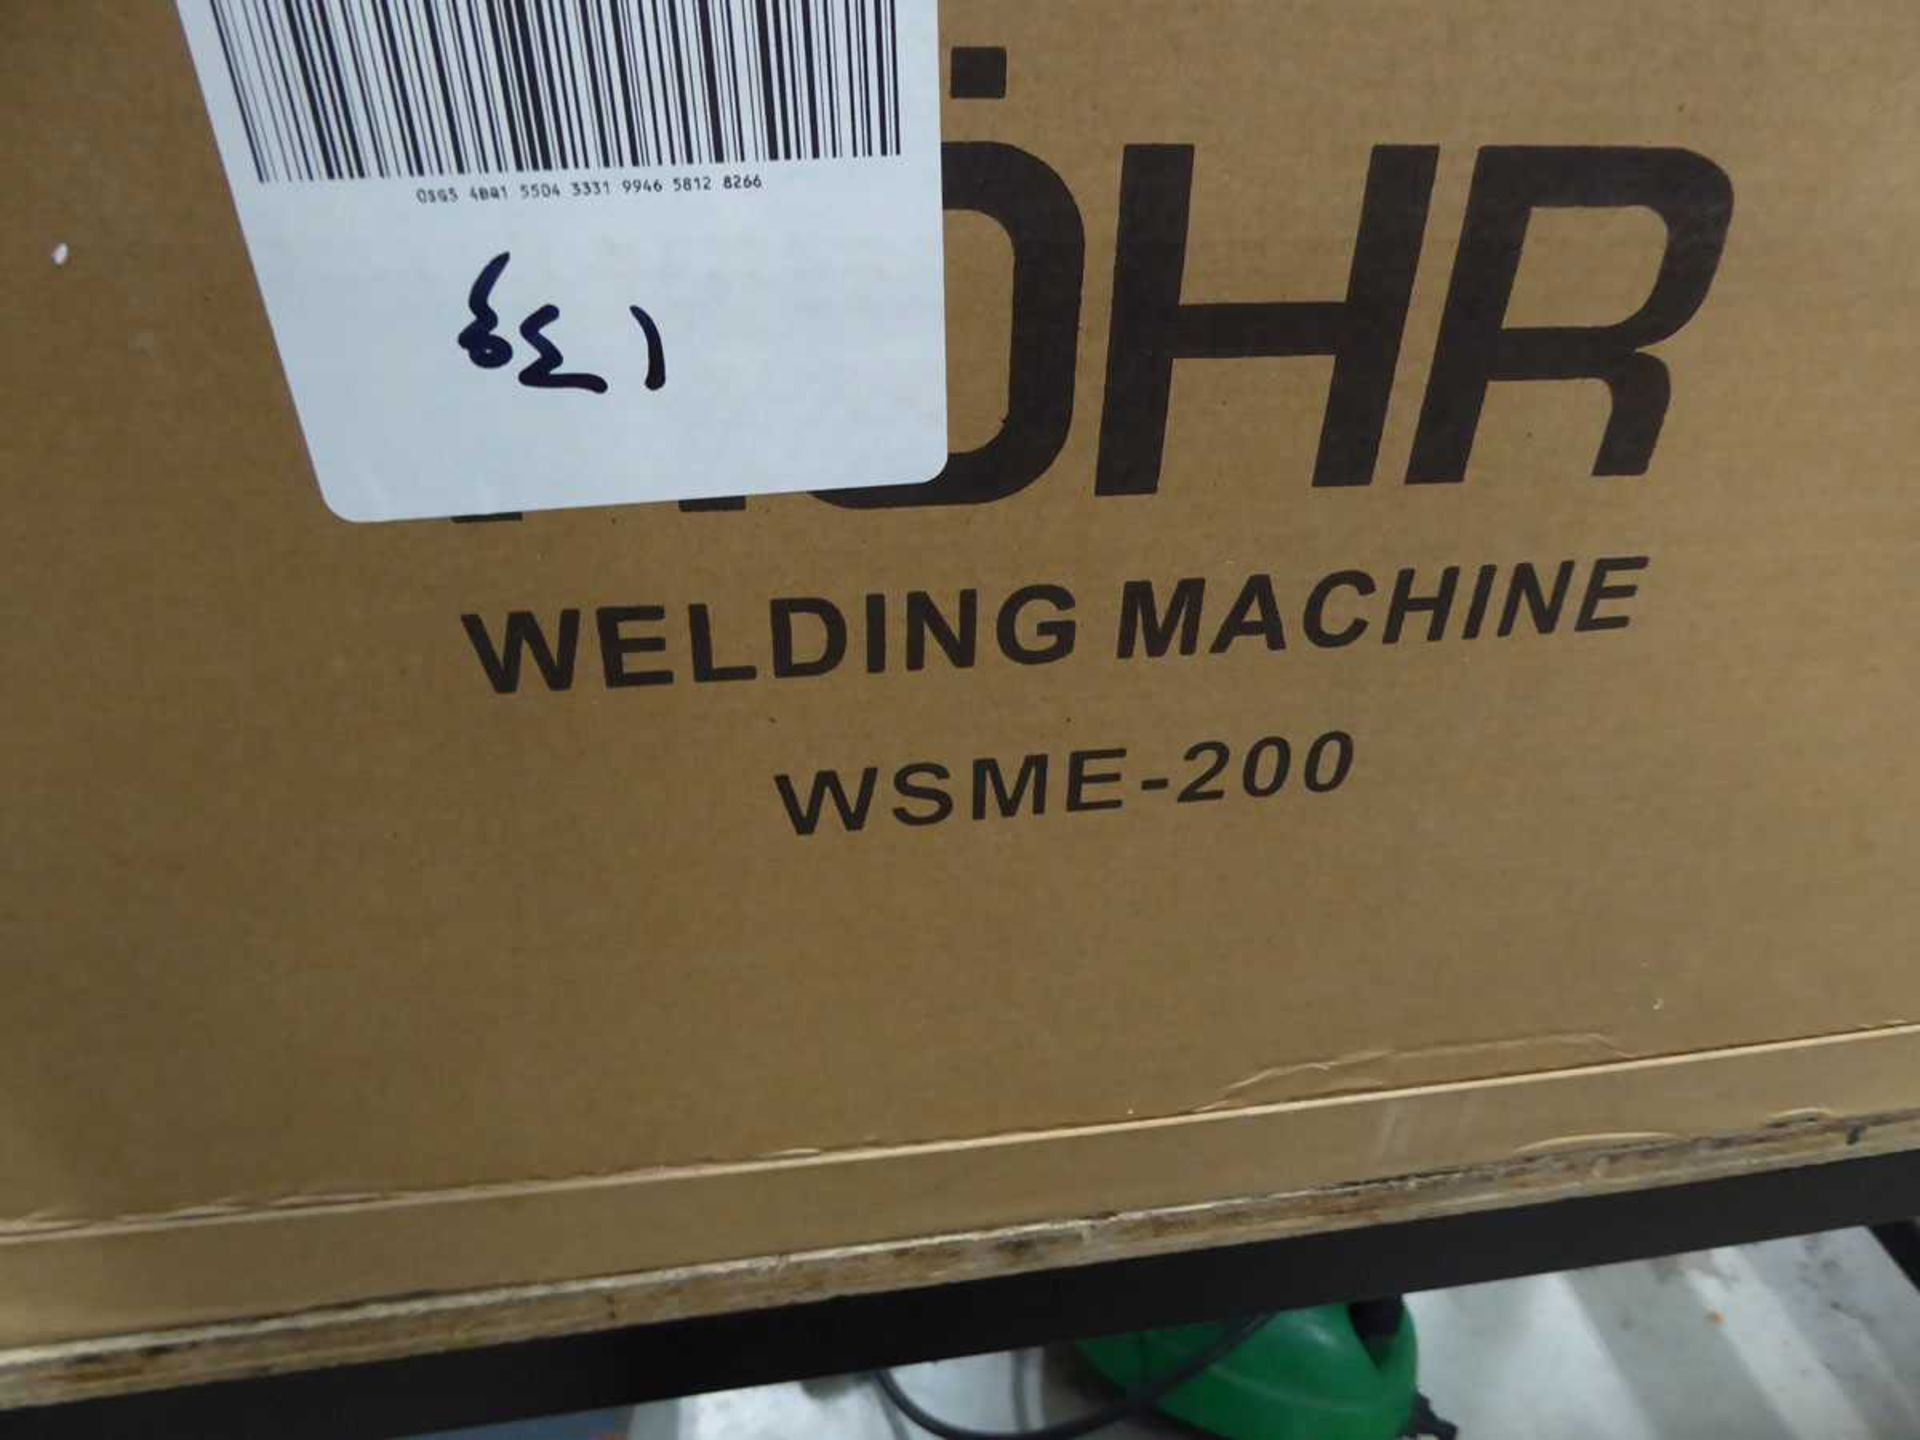 Rohr WSME 200 welding machine - Bild 2 aus 4